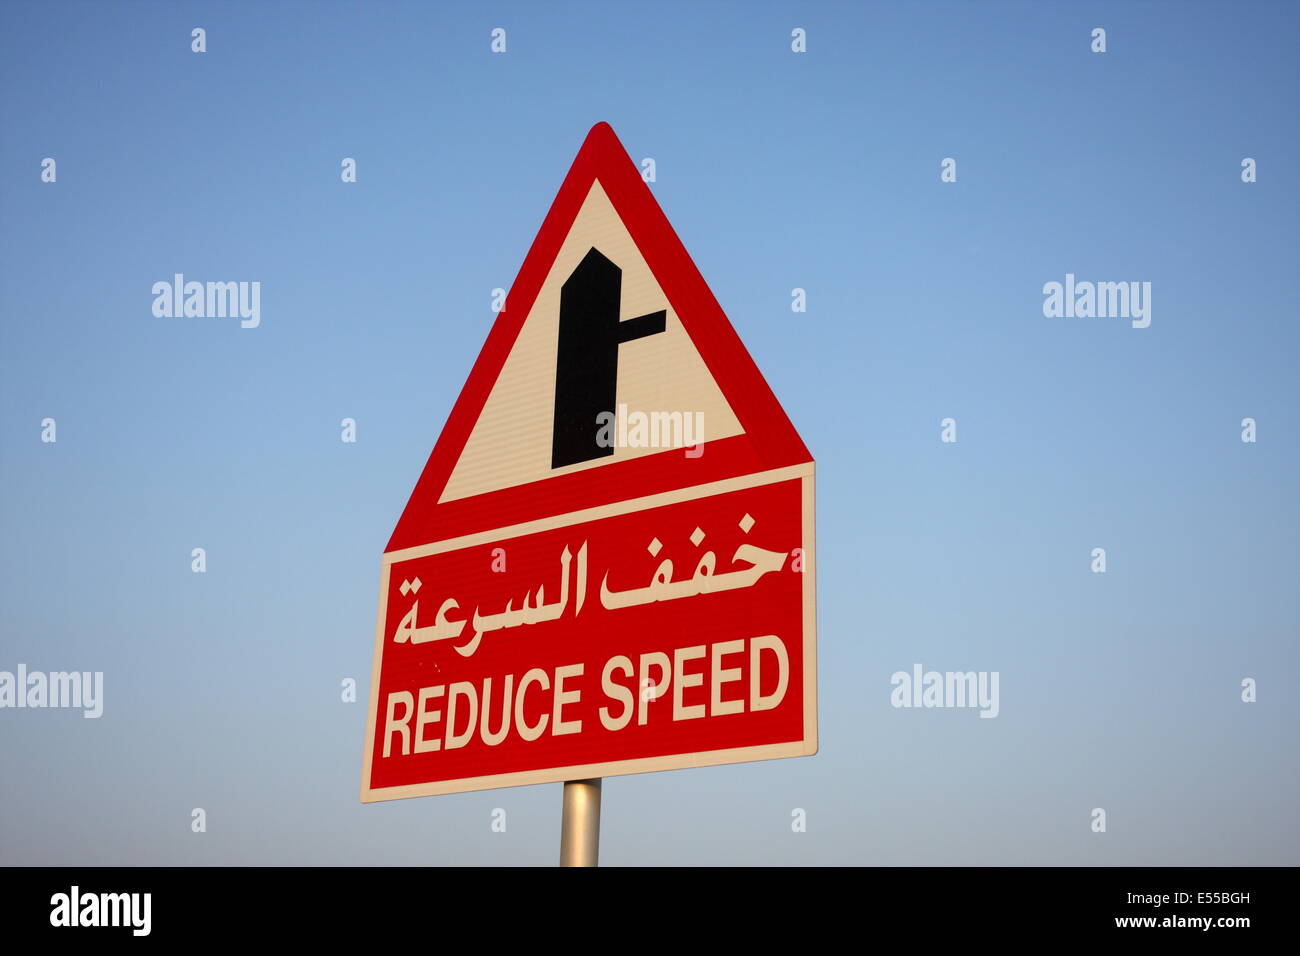 Une signalisation routière en arabe et français raconter les automobilistes à réduire leur vitesse en raison de la jonction, dans le Royaume de Bahreïn Banque D'Images